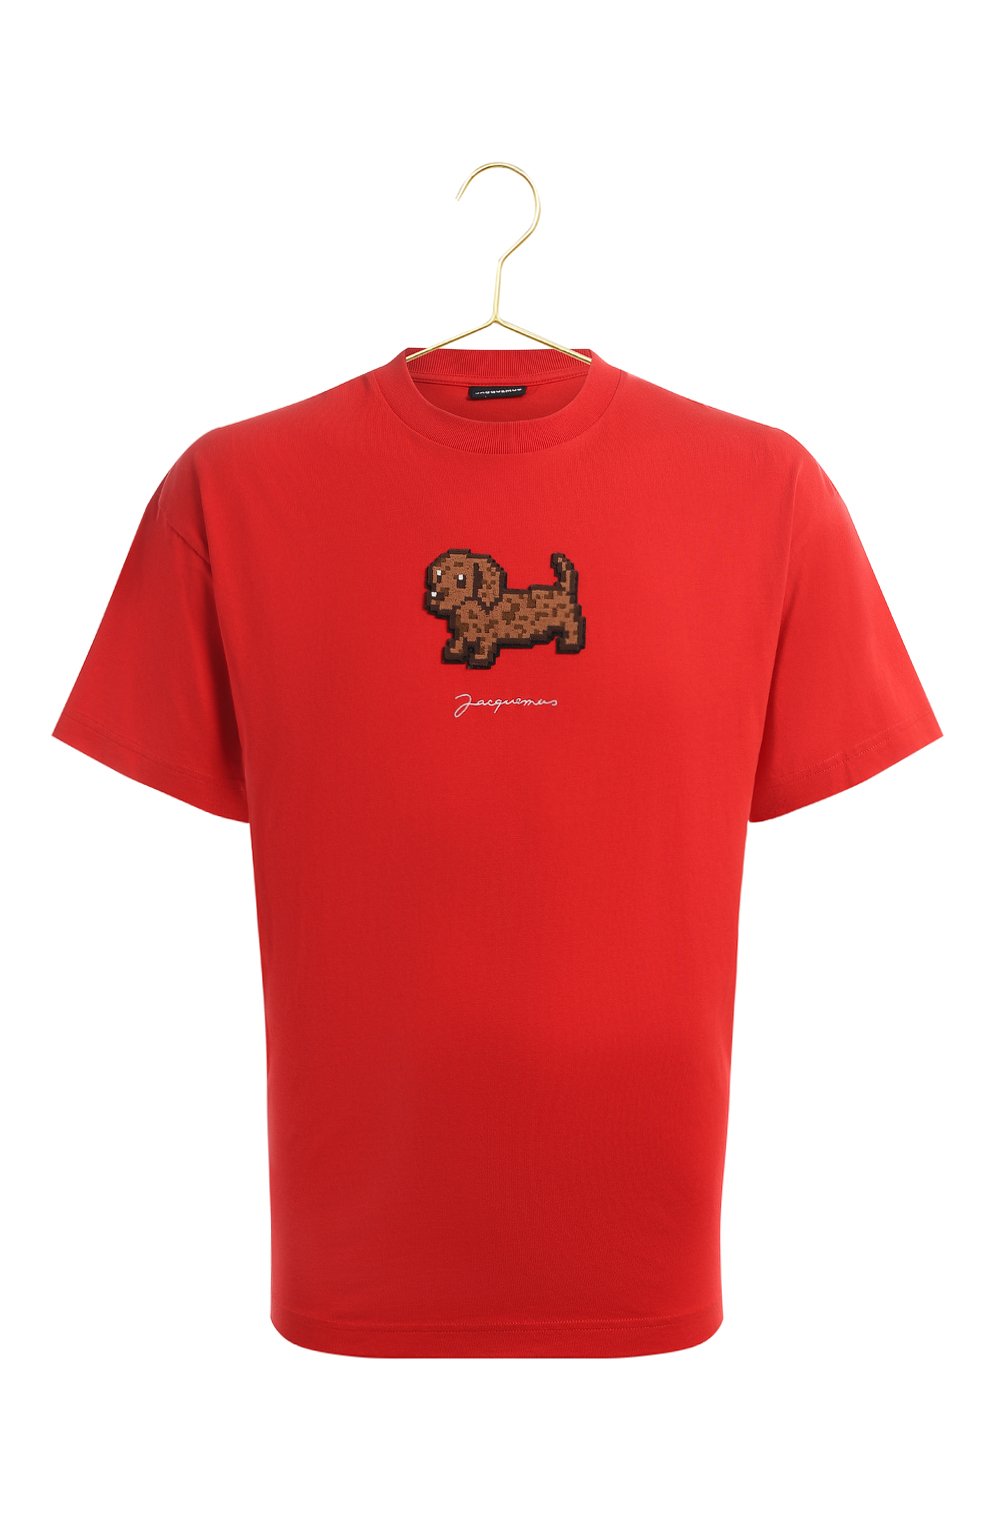 Хлопковая футболка | Jacquemus | Красный - 1